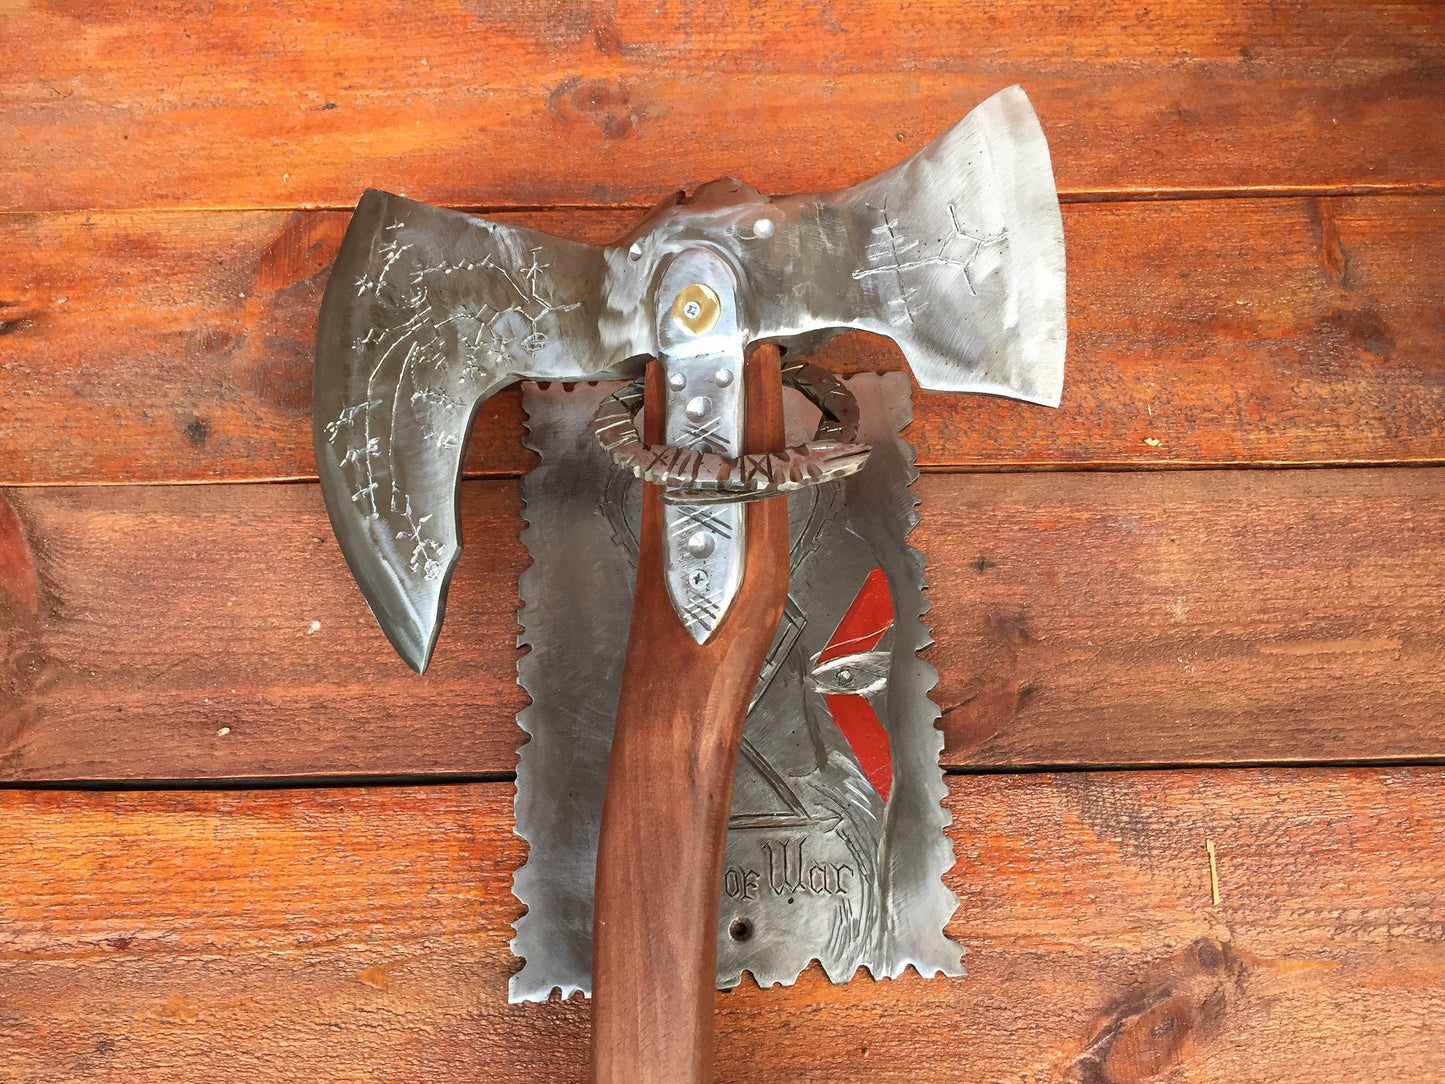 Axe holder, axe stand, Leviathan axe, God of War axe, Kratos axe, cosplay, viking axe, mens gifts, medieval axe, tomahawk, God of War decor